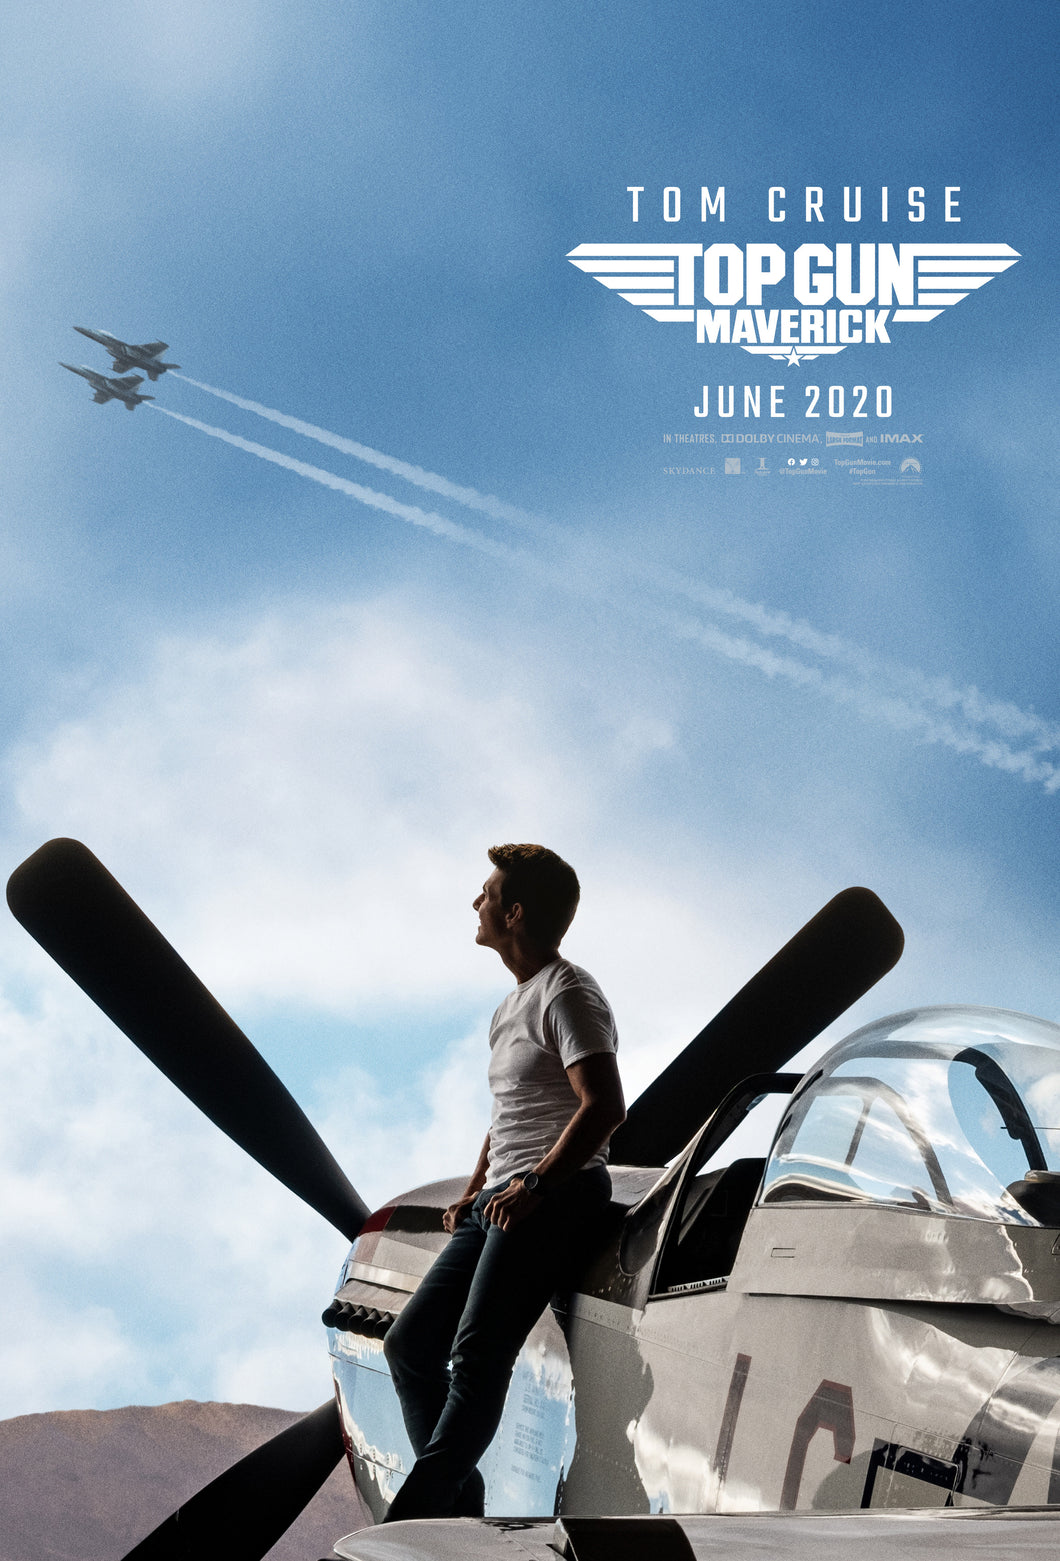 Poster Pelicula Top Gun